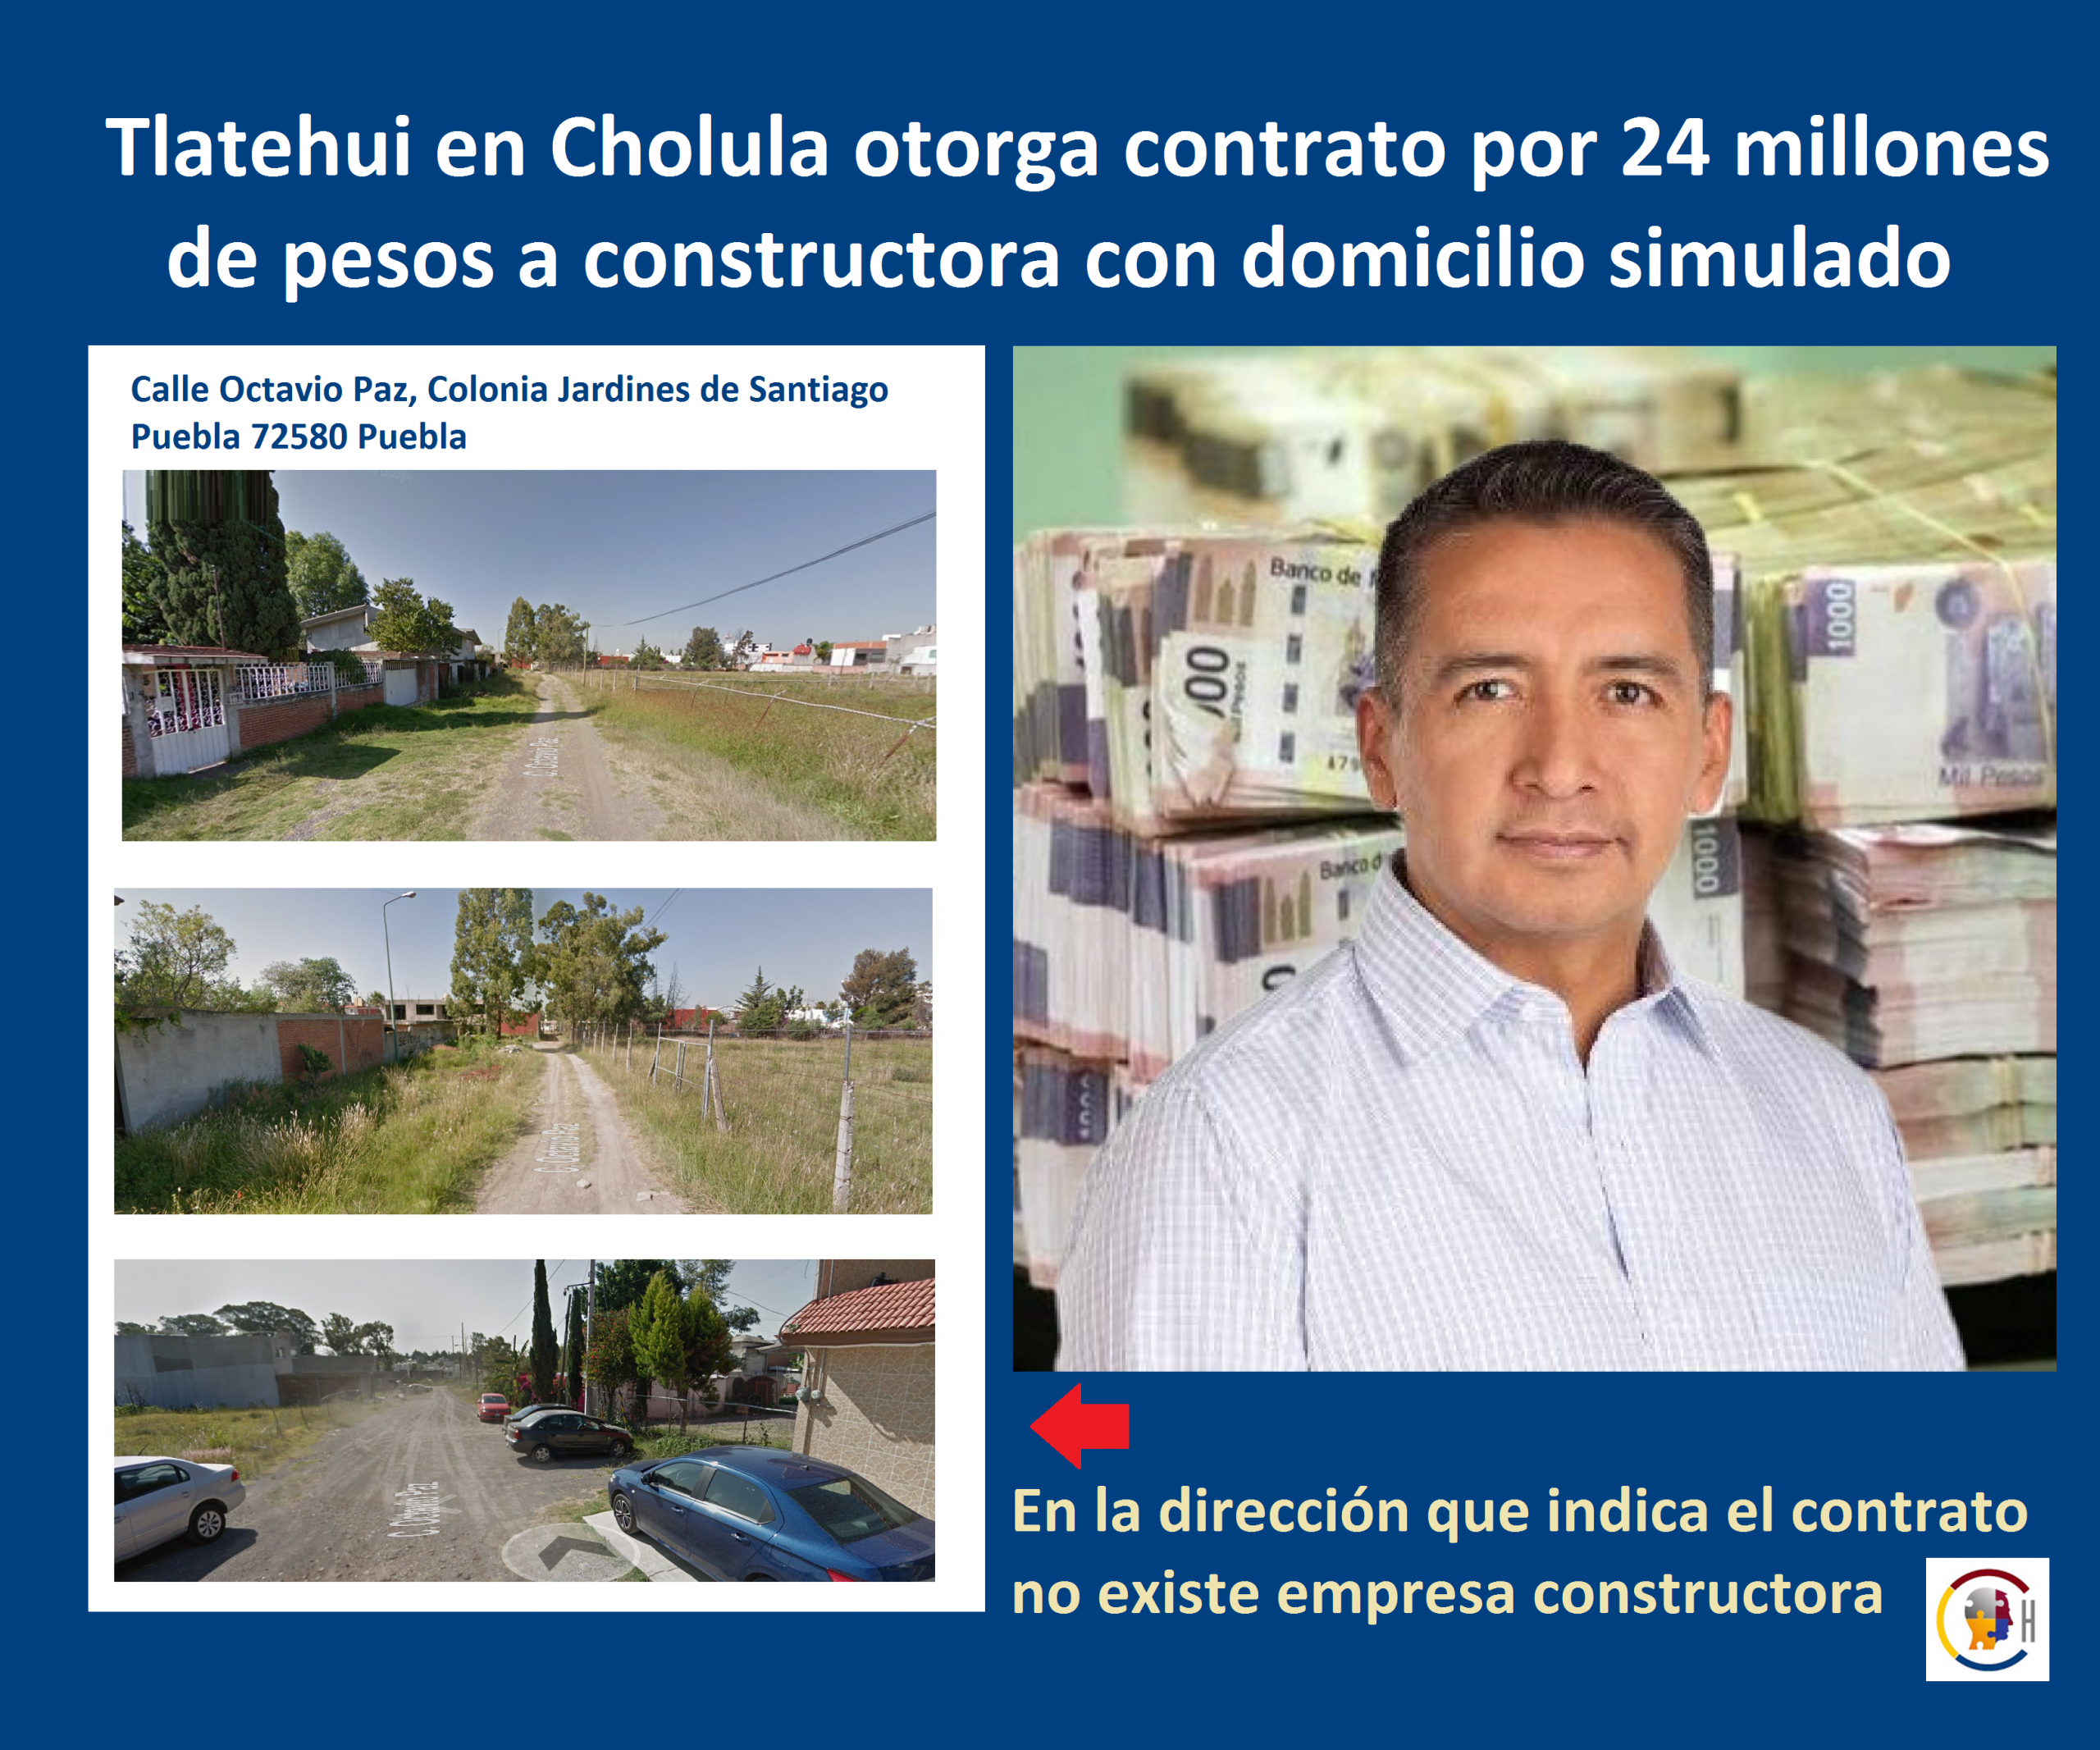 Tlatehui en Cholula otorga contrato por 24 millones de pesos a constructora con domicilio simulado